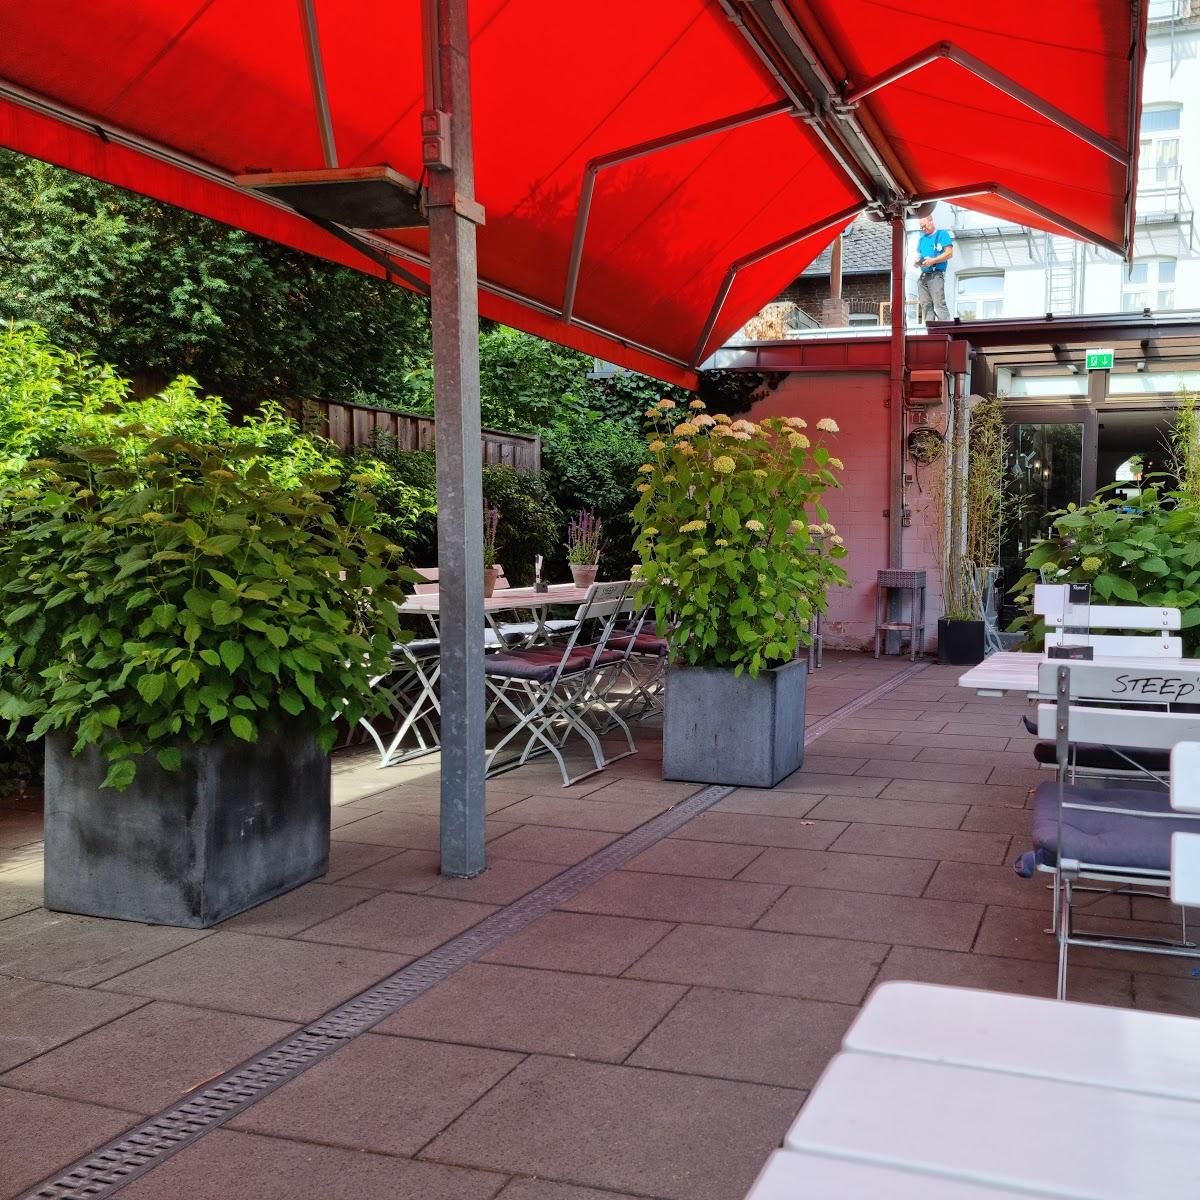 Restaurant "Steep`s Ihr Brauhaus & Hotel" in Köln